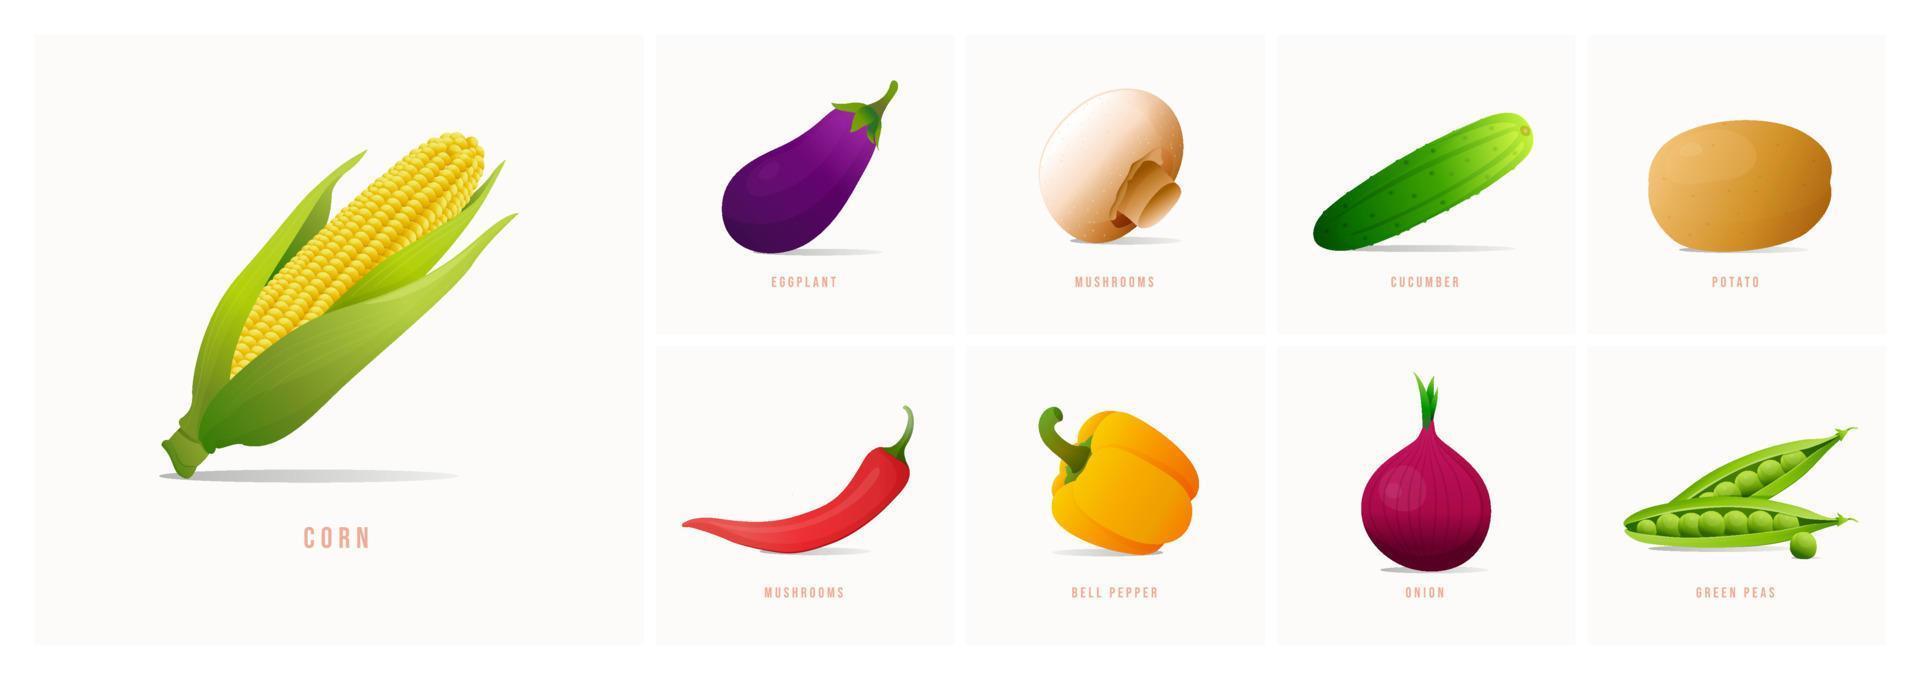 Vektor-Gemüse-Icons im Cartoon-Stil. sammlung landwirtschaftliches produkt für restaurantmenü, marktetikett. vektor